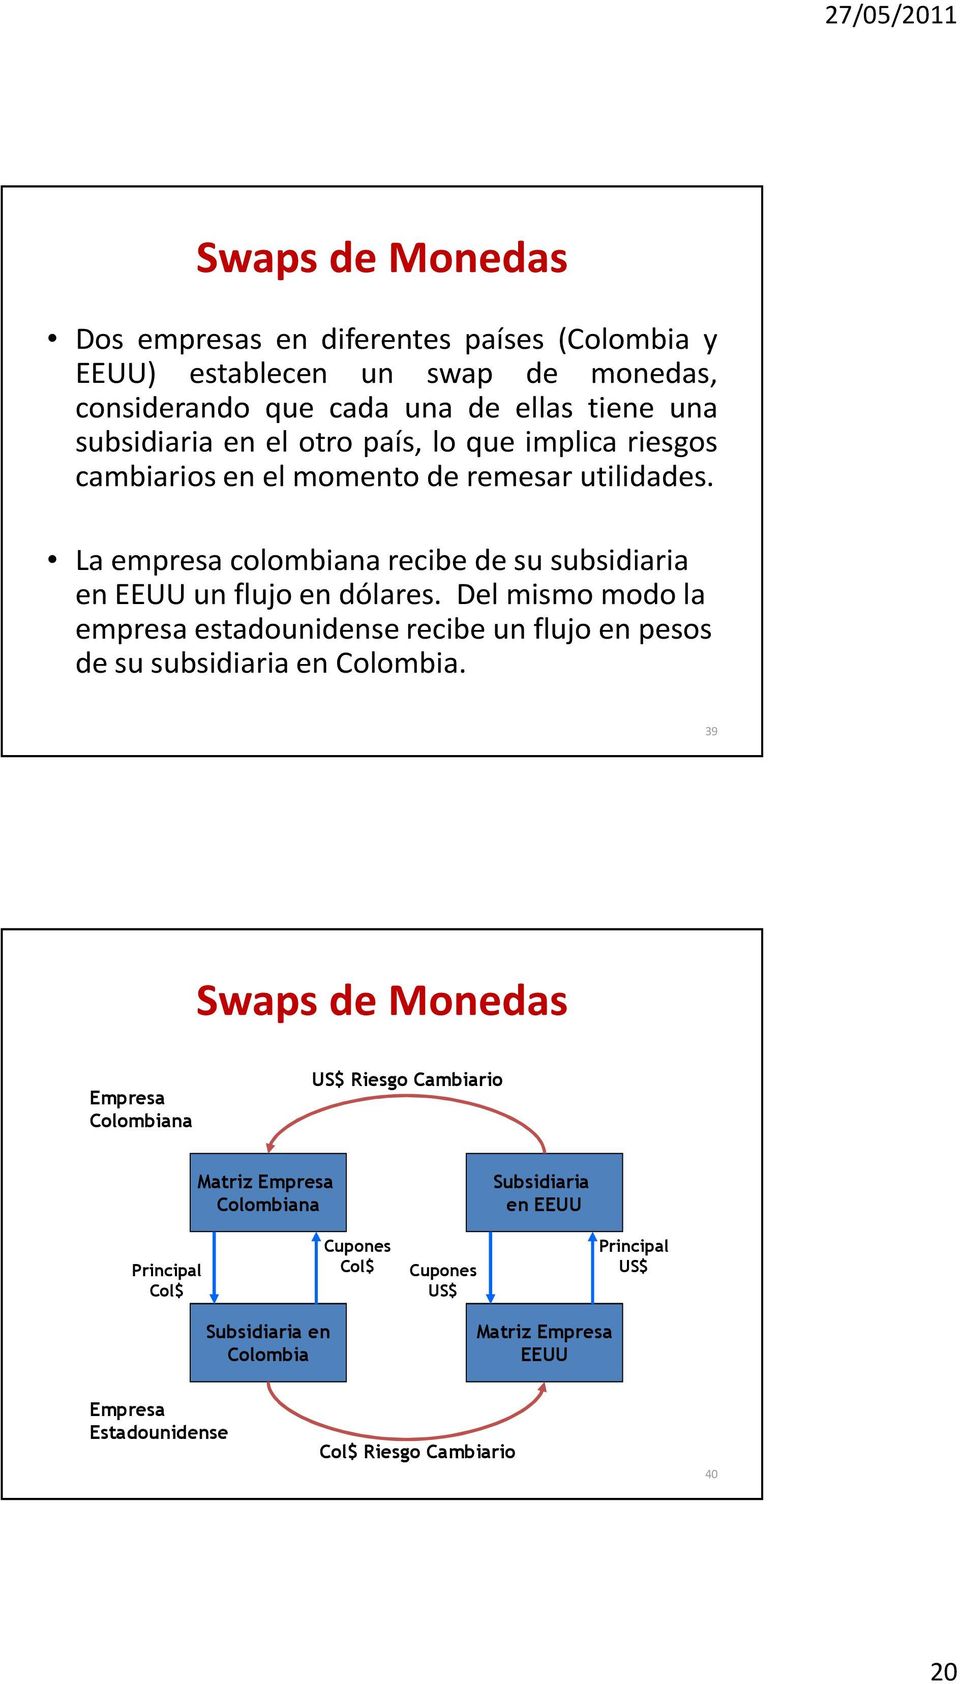 Del mismo modo la empresa estadounidense recibe un flujo en pesos de su subsidiaria en Colombia.